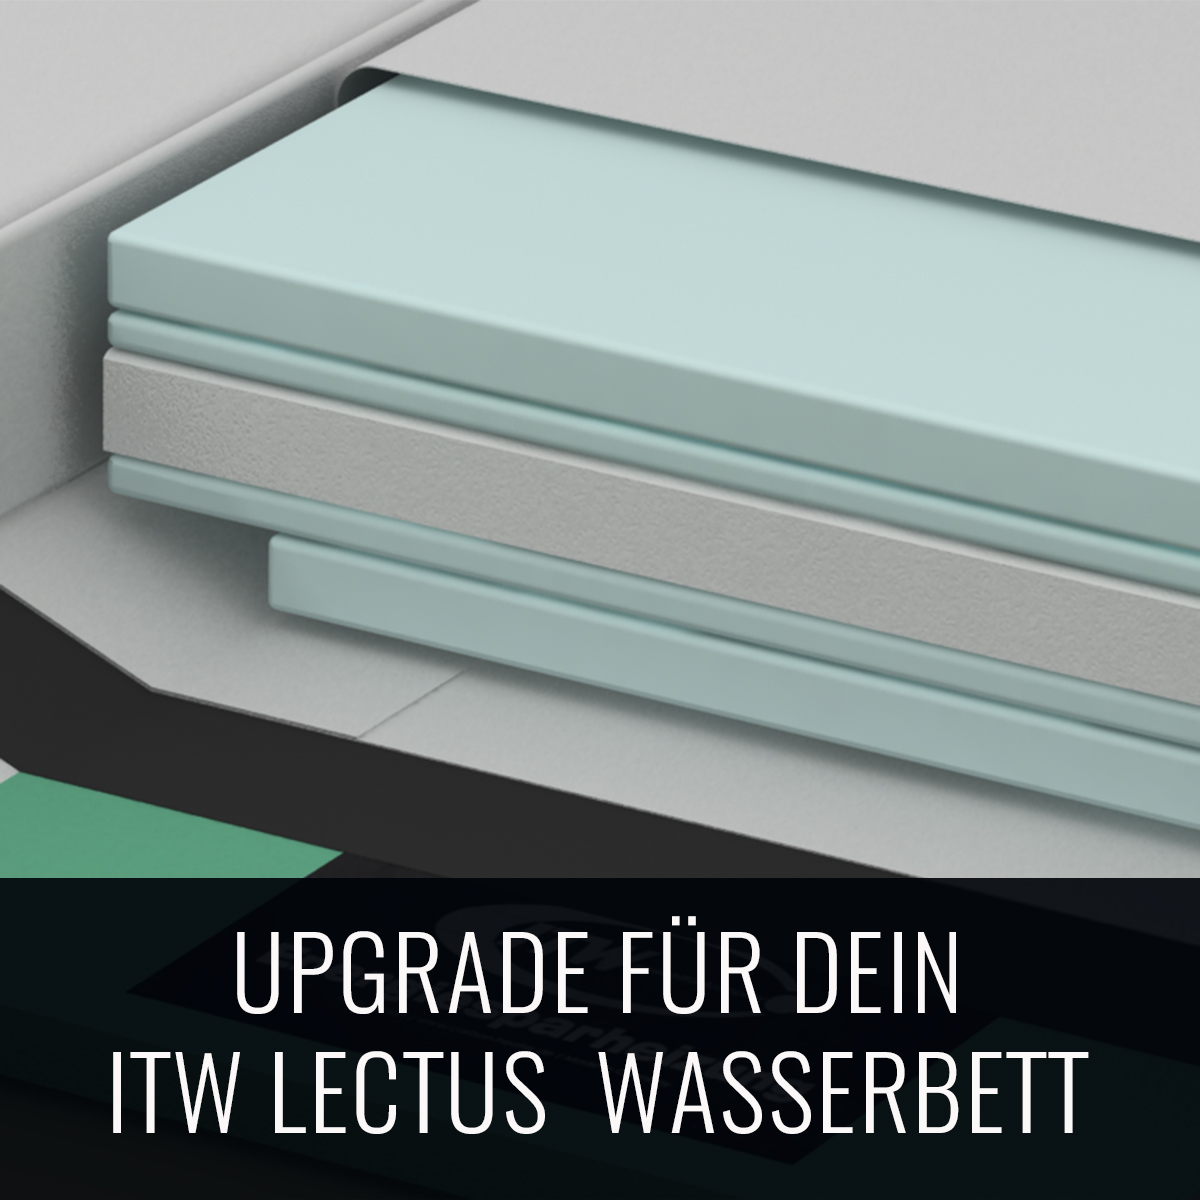 ITW Lectus Wassermatratze Upgrade 160x200